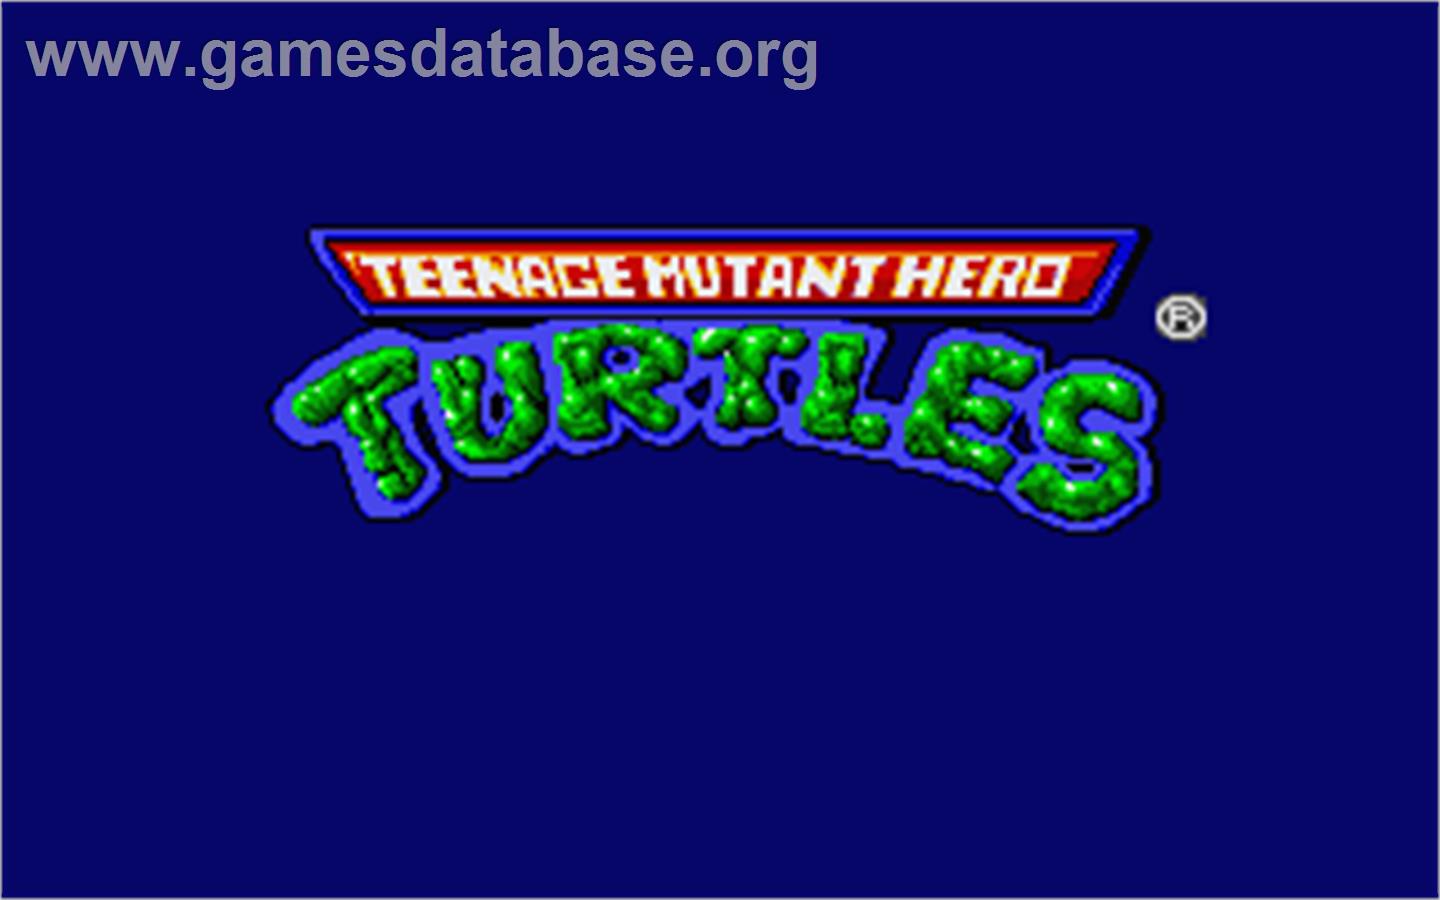 Teenage Mutant Ninja Turtles - Atari ST - Artwork - Title Screen